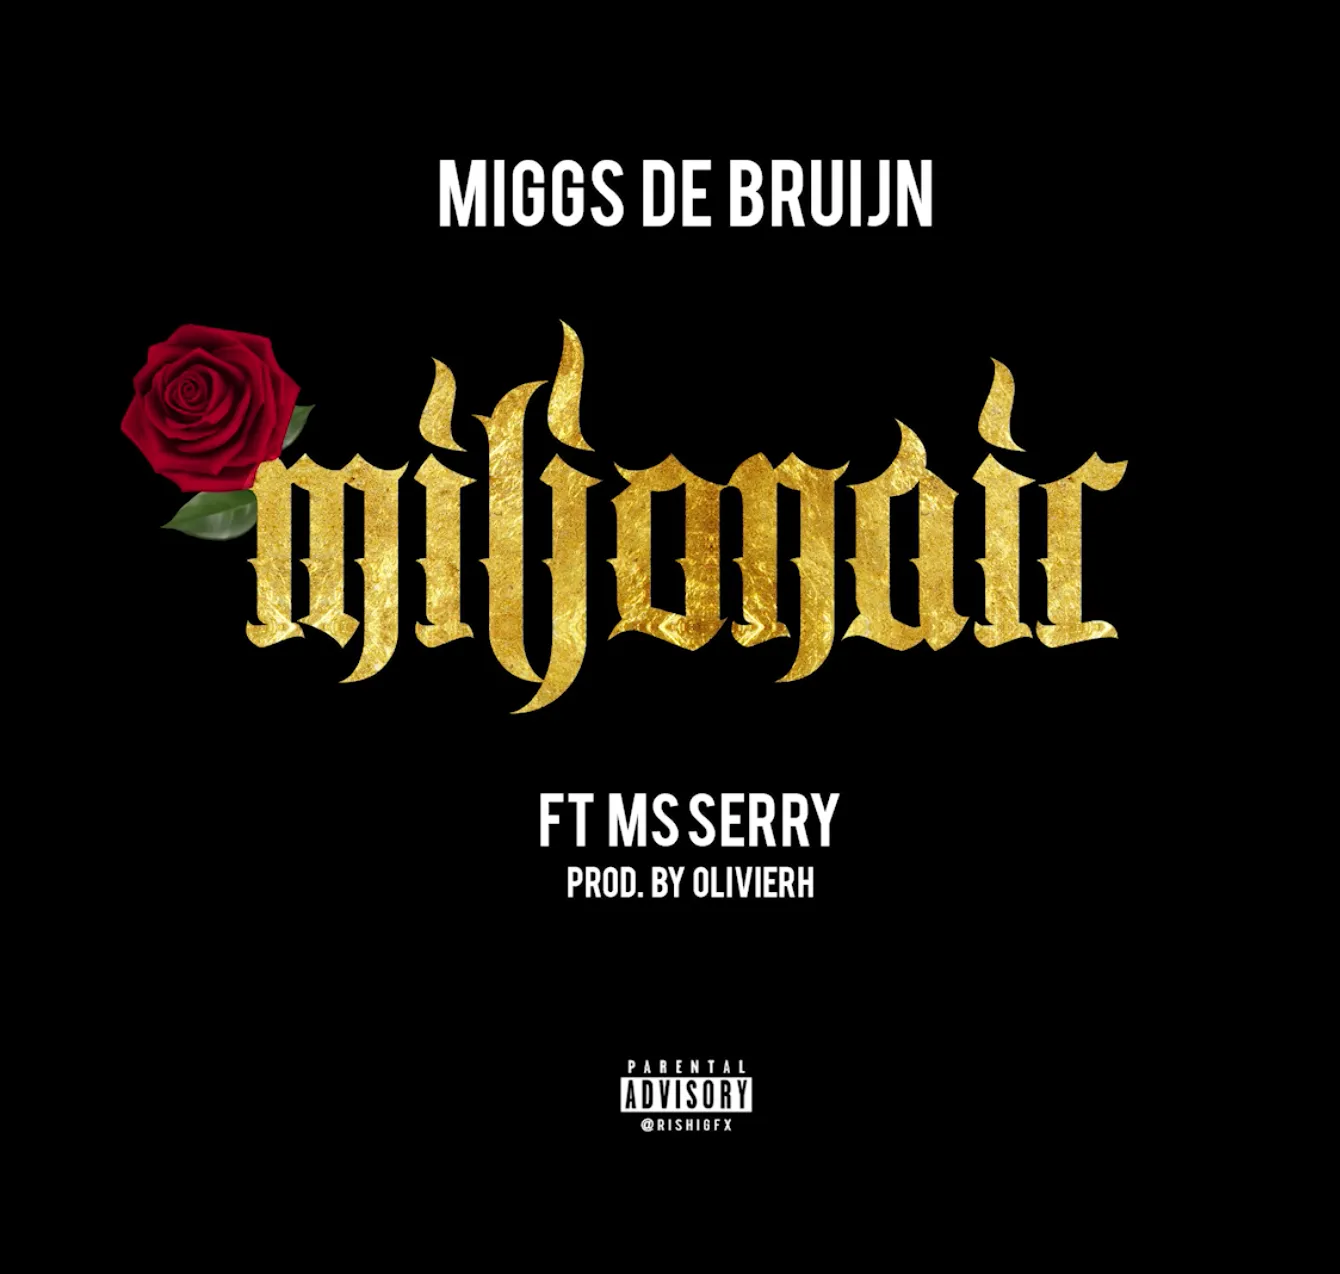 Miggs de Bruijn - Miljonair ft MS Serry